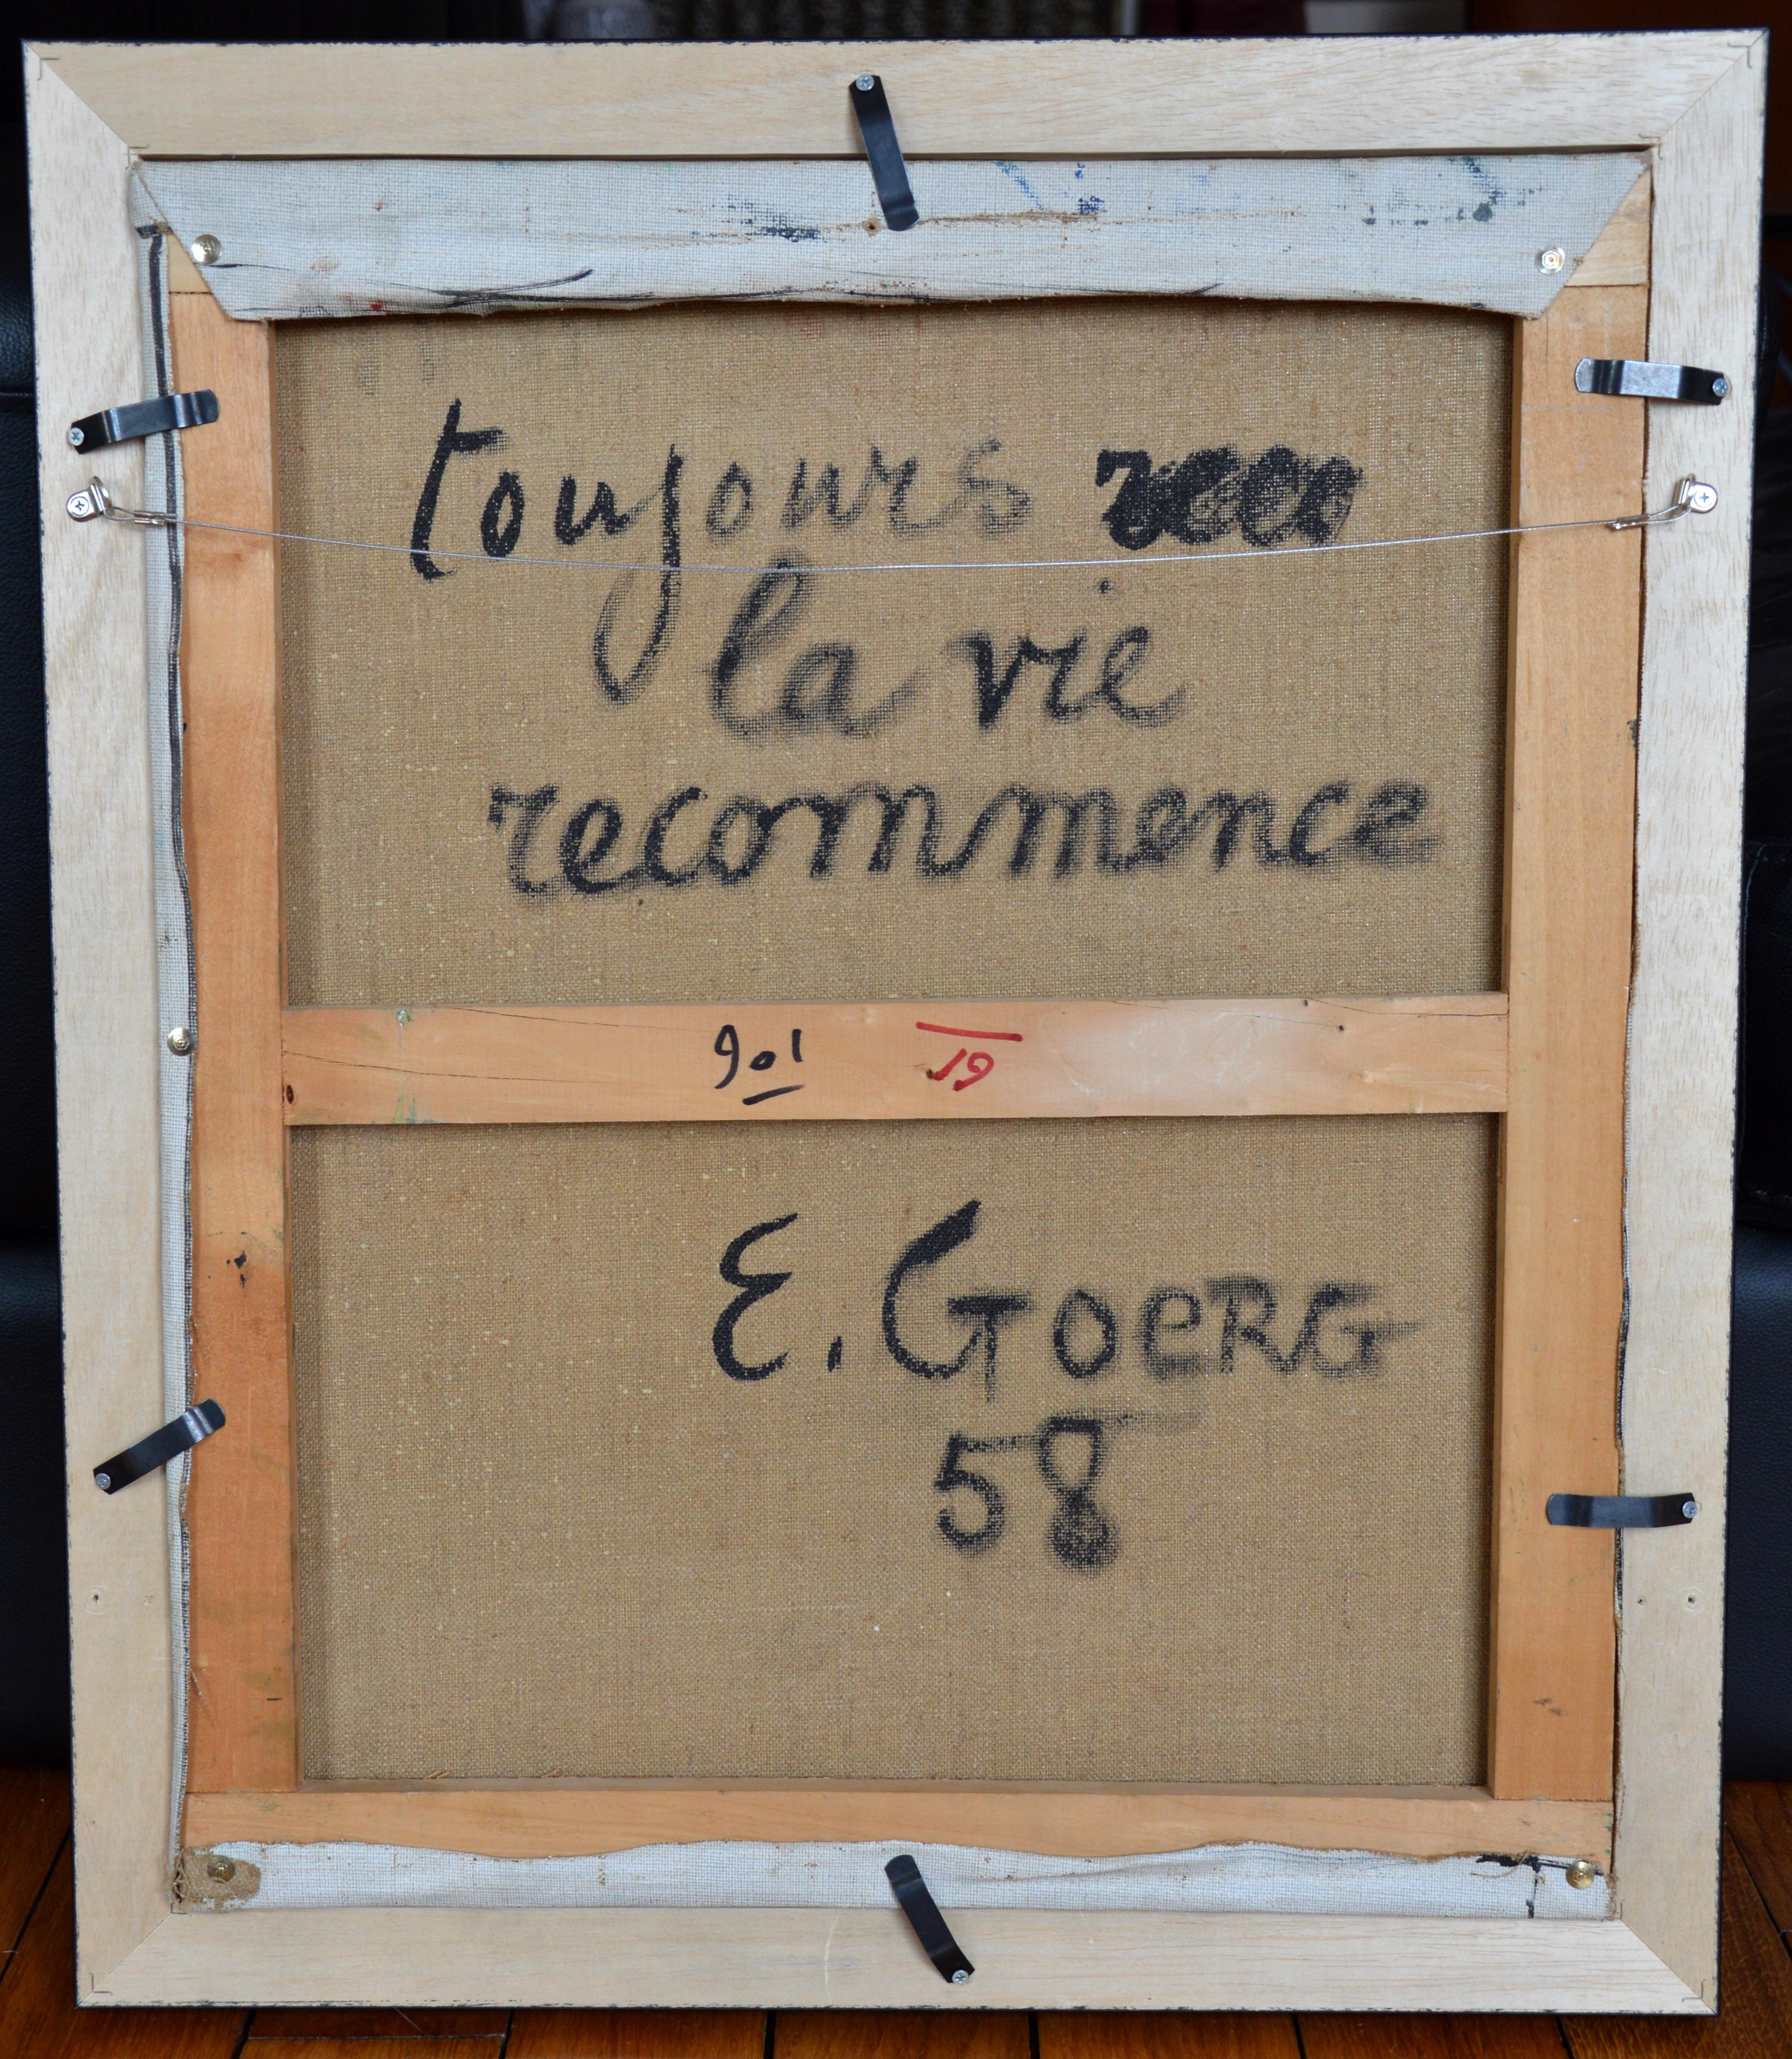 Huile sur toile d'Edouard Goerg (1893-1969), France, 1958. La vie est toujours la même. Acquis en 2017 auprès de la collection personnelle d'Edouard Goerg. Dimensions : avec cadre : 62.5x53.4 cm - 24.6x21 inches, sans cadre : 55x46 cm - 21.7x18.1